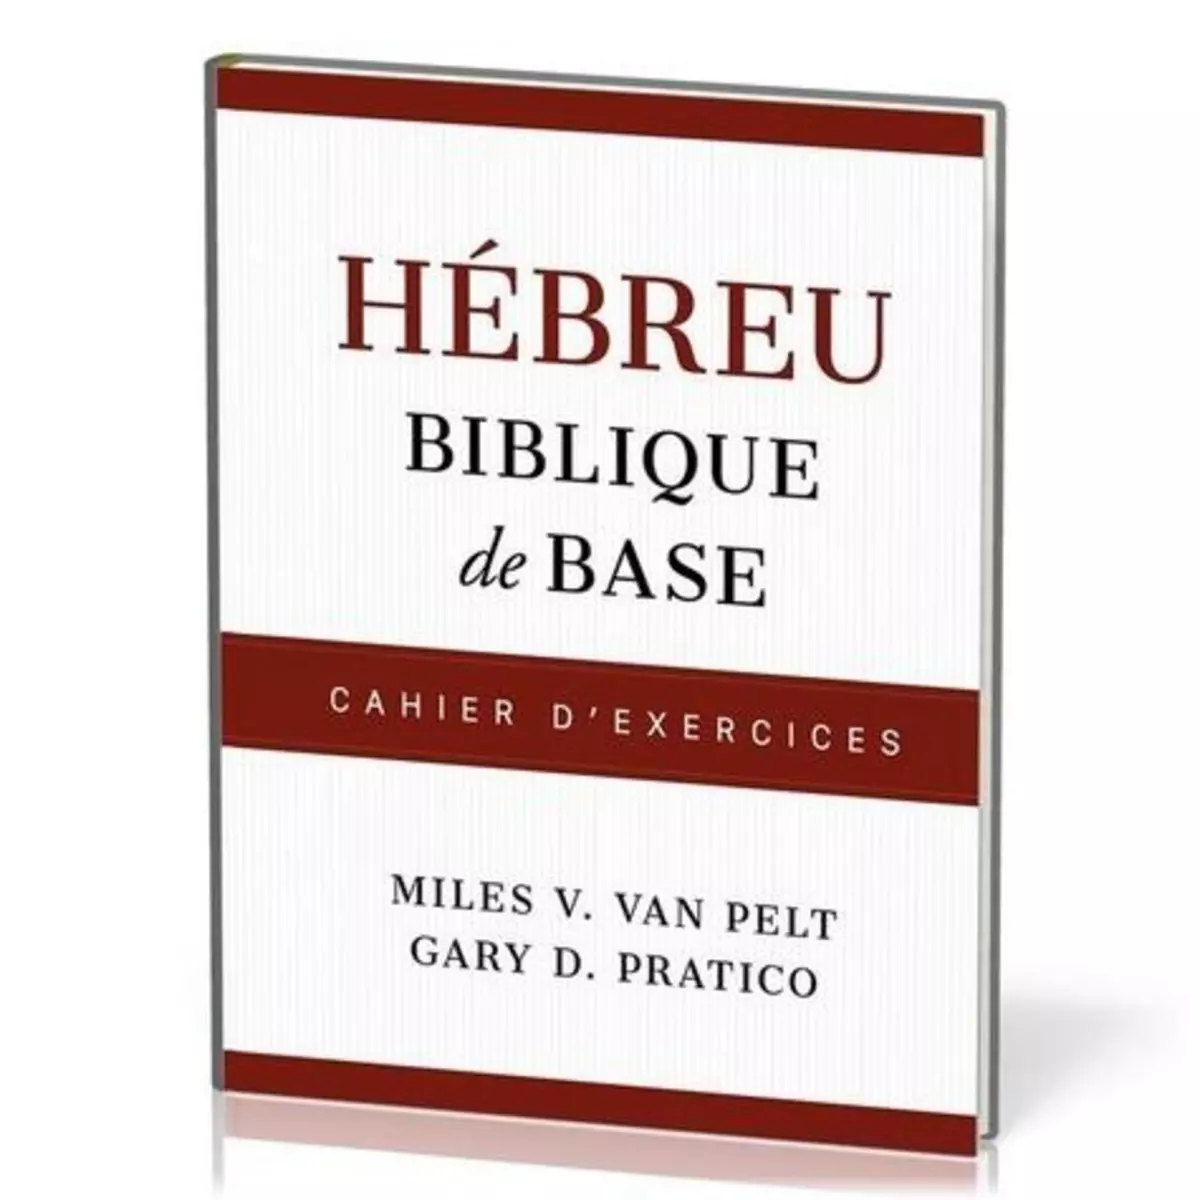  HEBREU BIBLIQUE DE BASE, V. Van pelt miles